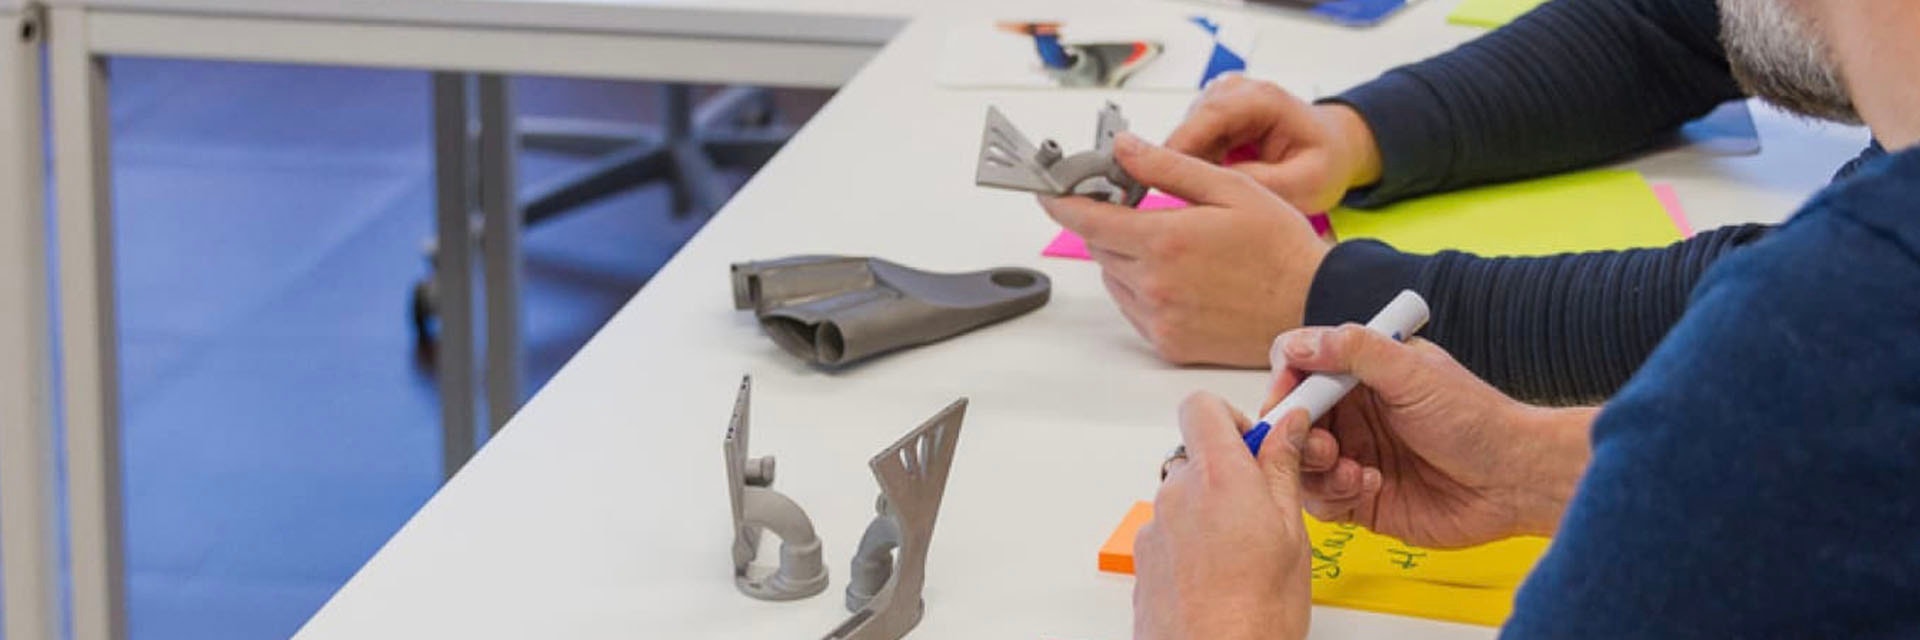 Experten analysieren 3D-gedruckte Metallteile auf einem Schreibtisch